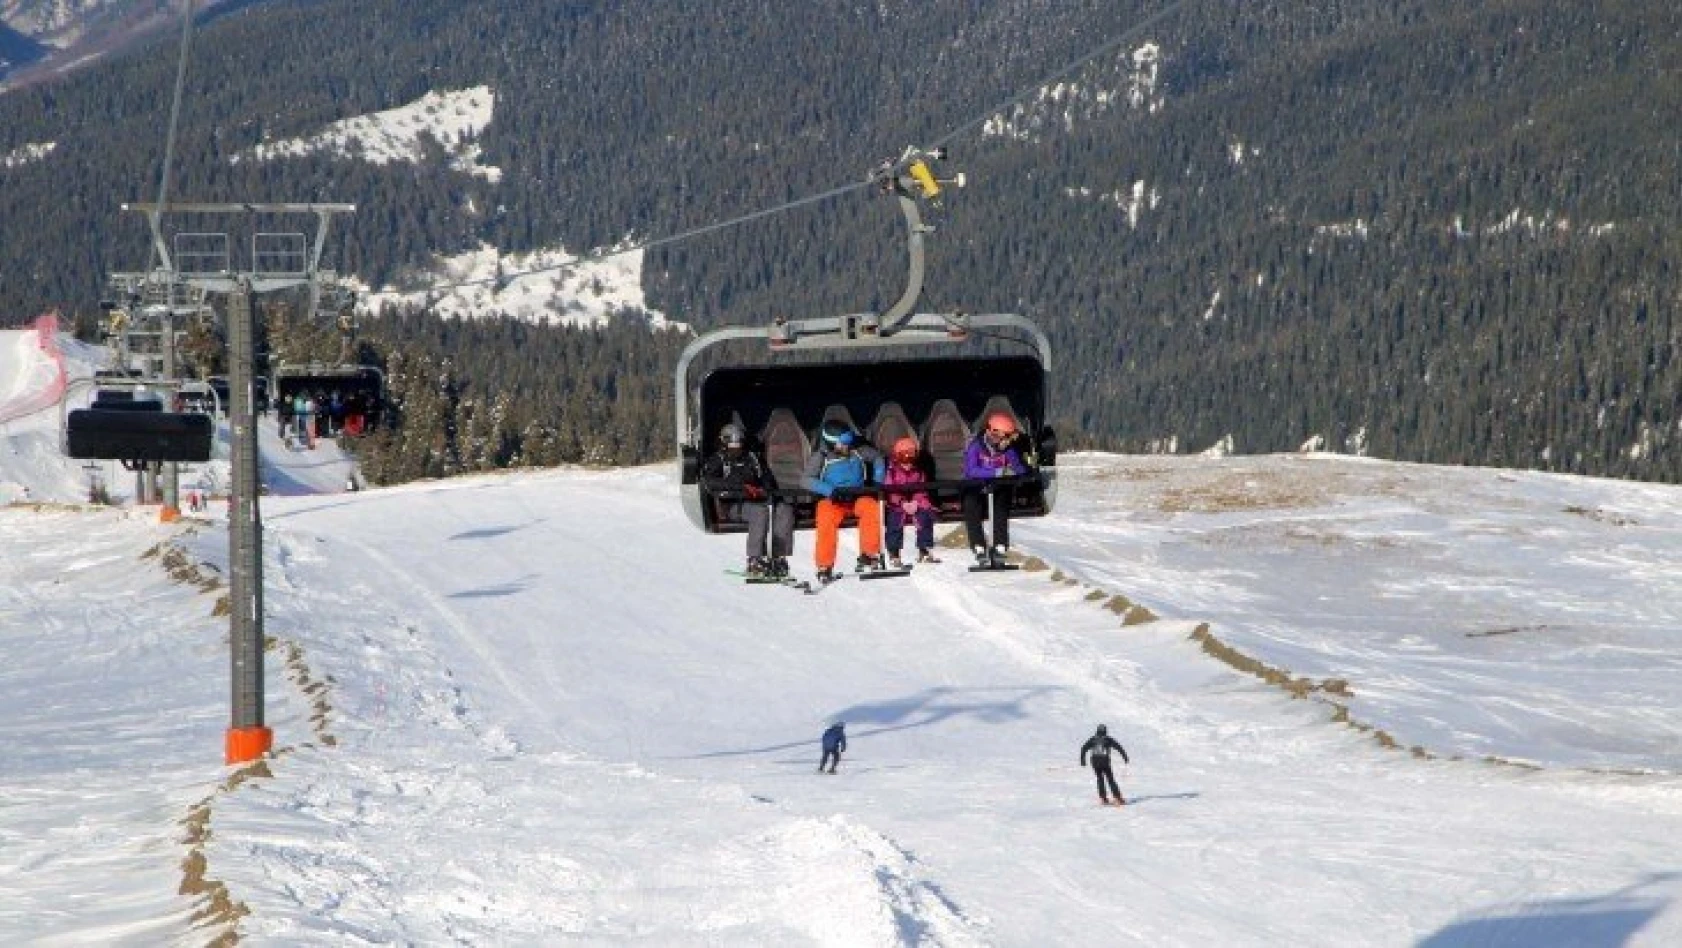 Ilgaz Dağı'nda kayak sezonu nisan ayına uzadı